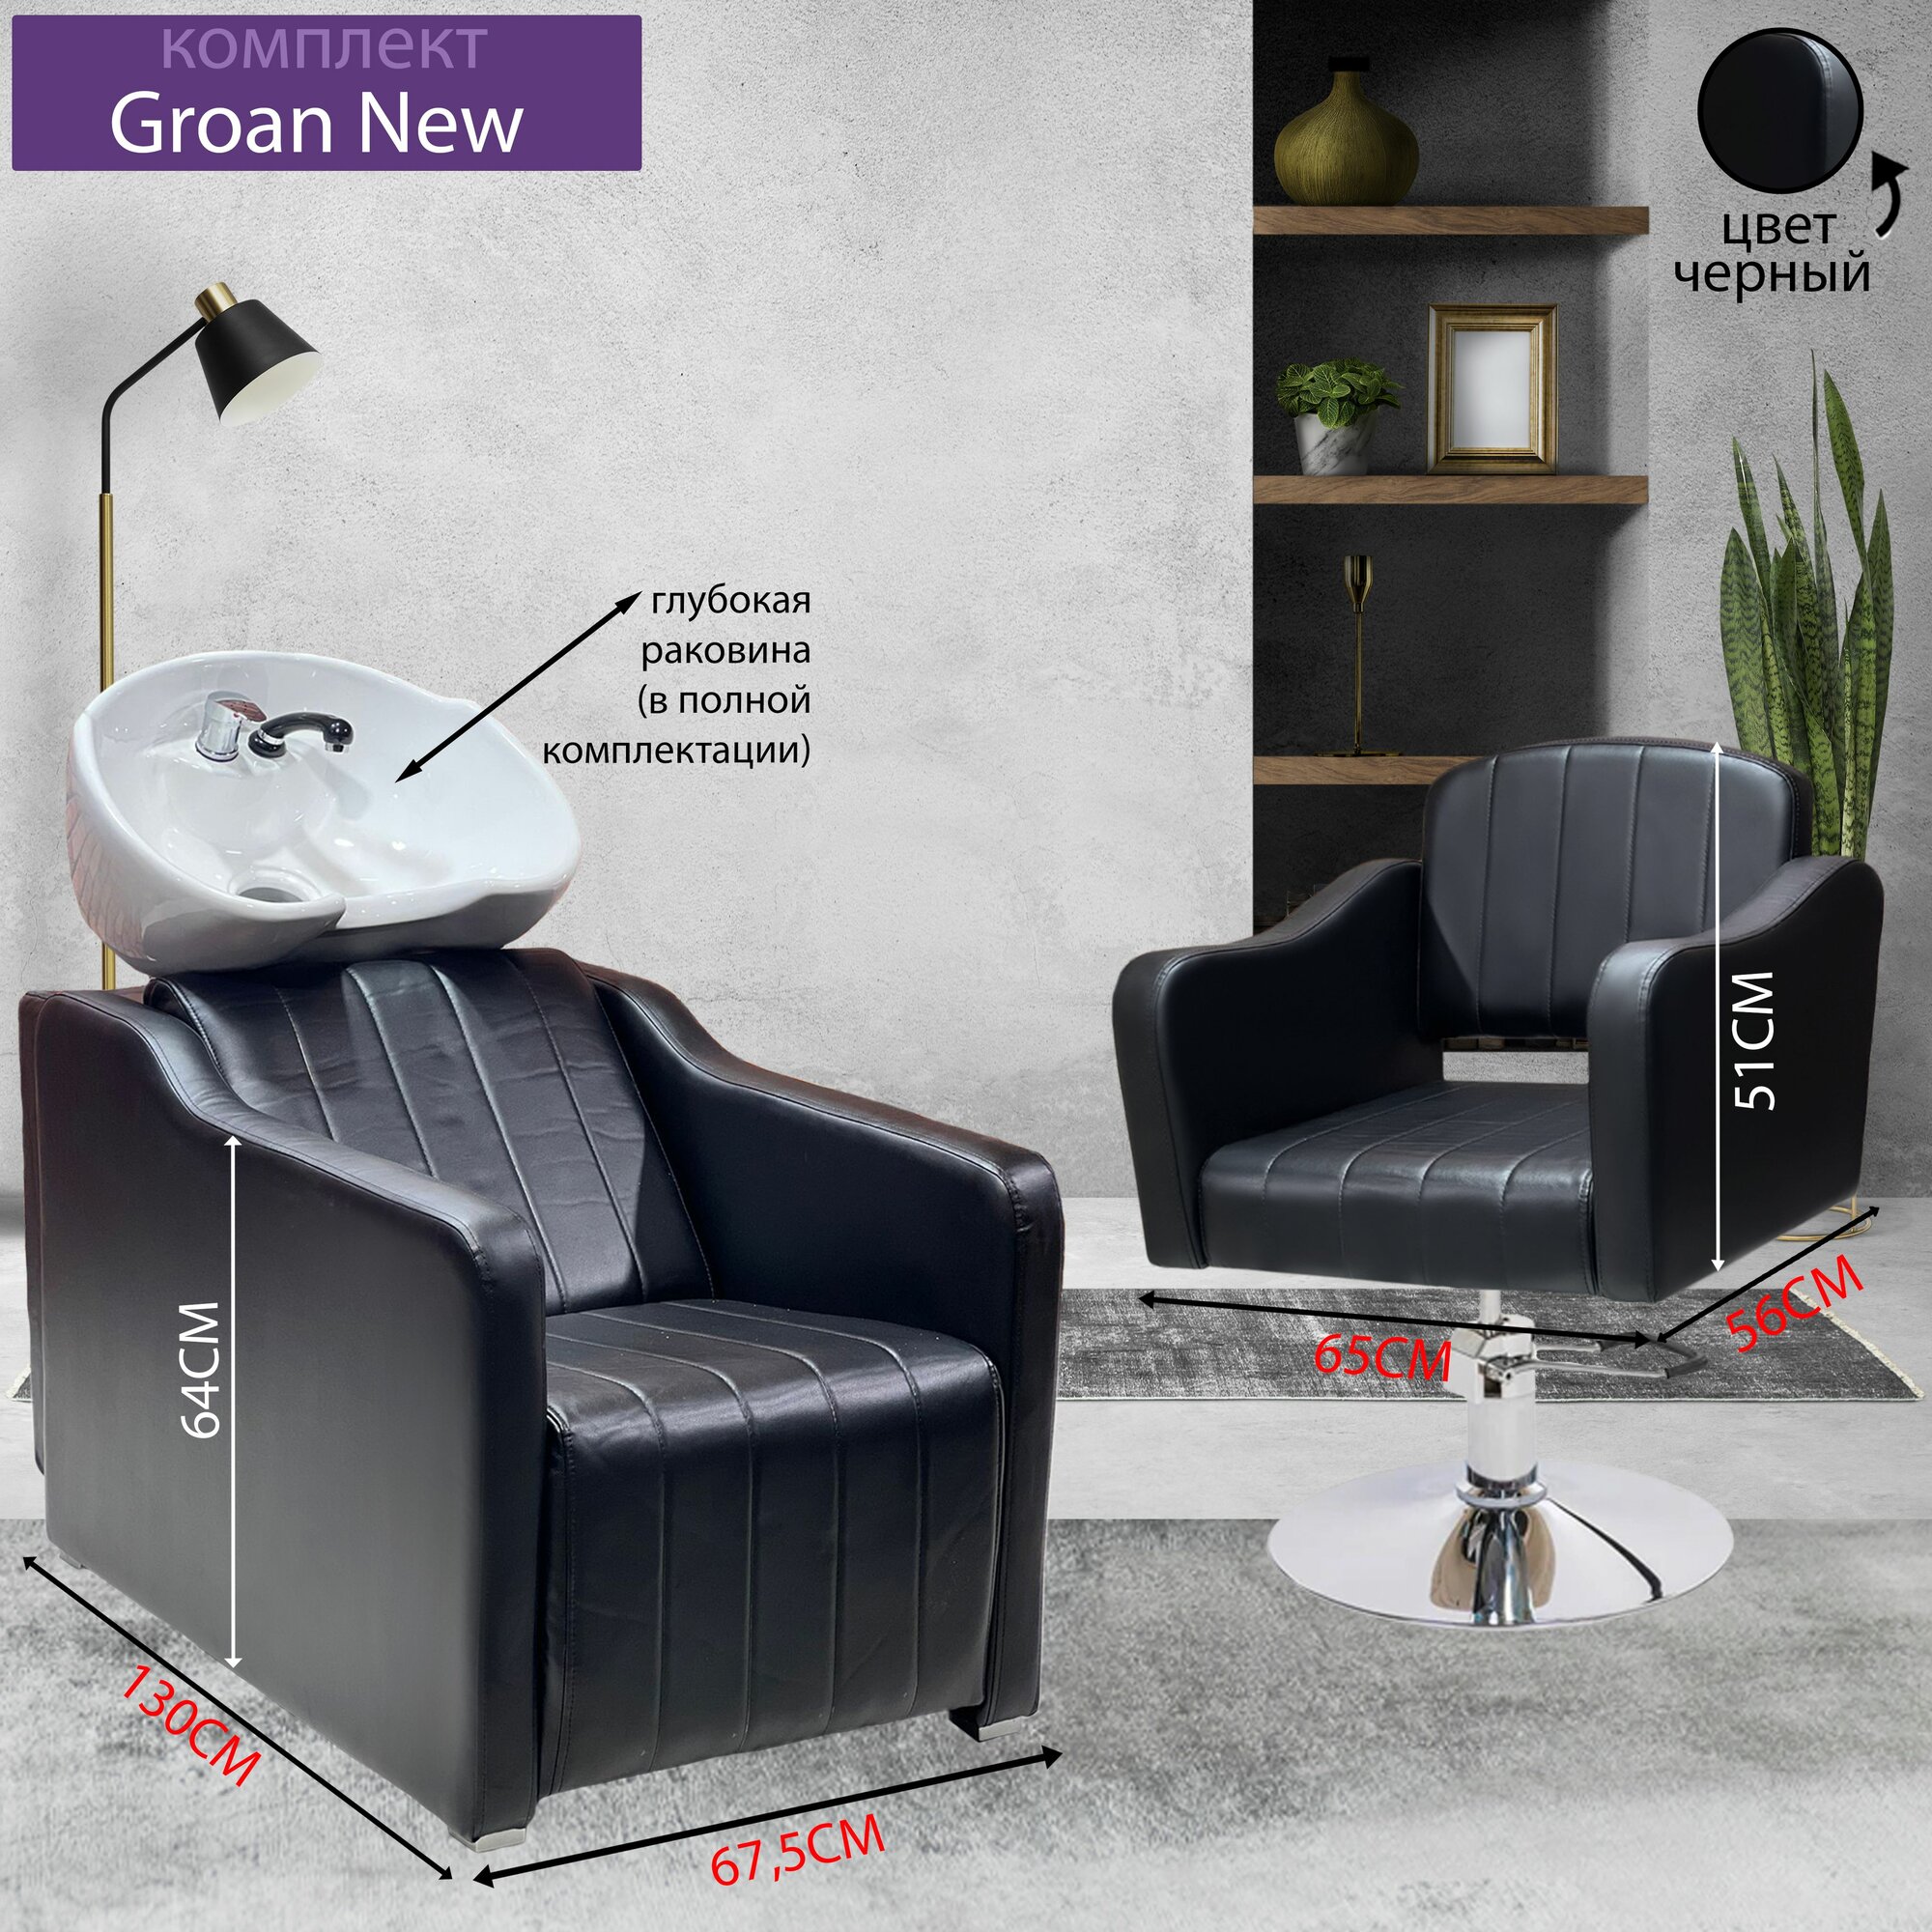 Парикмахерский комплект "Groan New", Черный, 1 кресло гидравлика диск, 1 мойка раковина белая глубокая